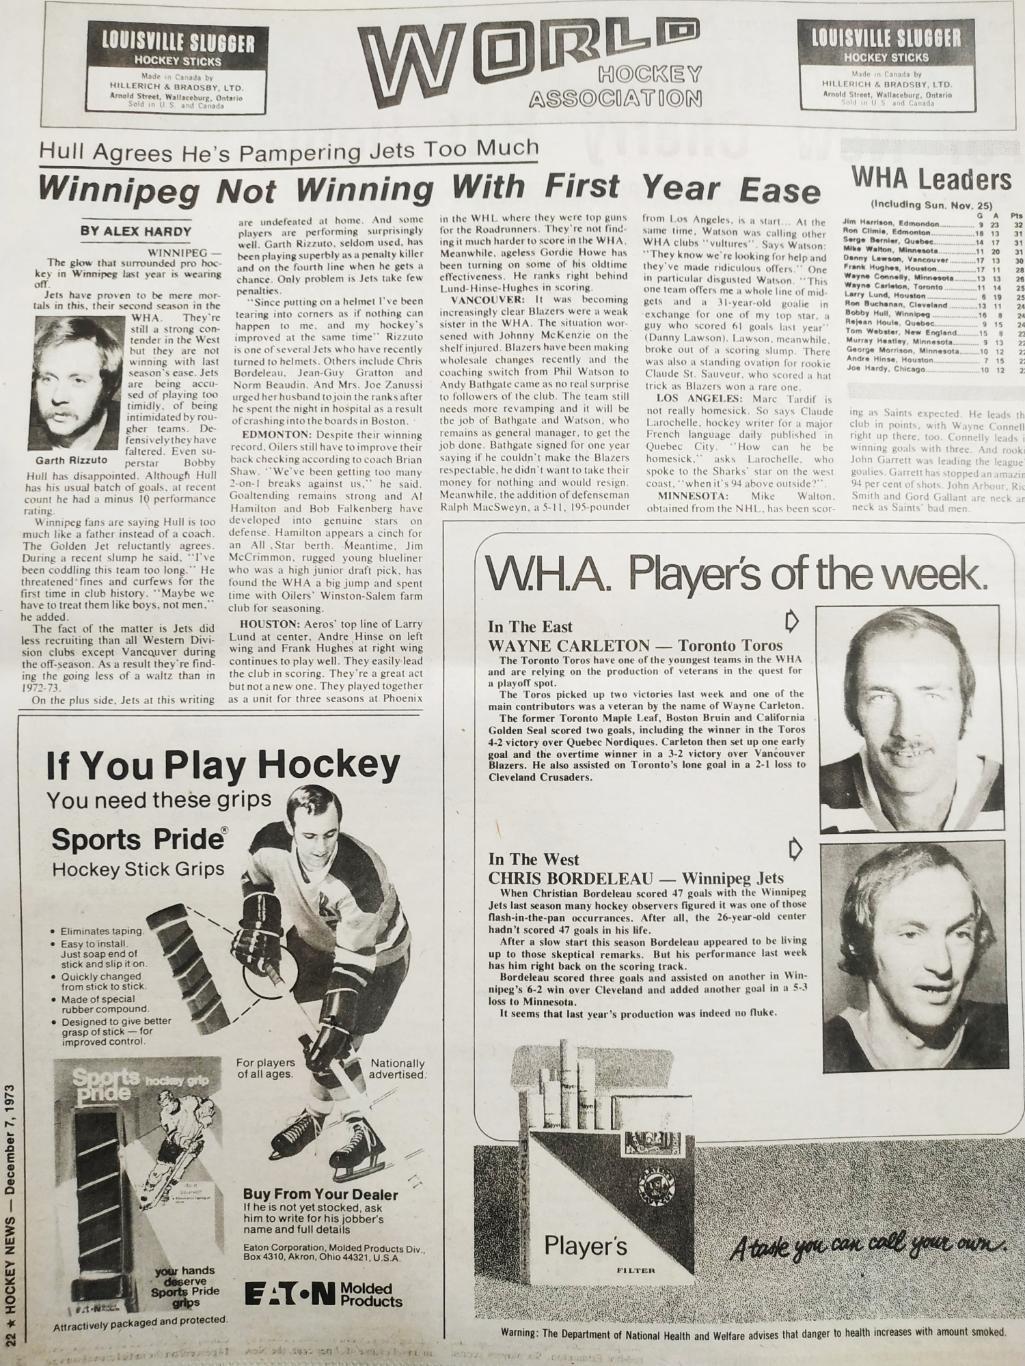 ХОККЕЙ ЖУРНАЛ ЕЖЕНЕДЕЛЬНИК НХЛ НОВОСТИ ХОККЕЯ DEC.7 1973 NHL THE HOCKEY NEWS 5